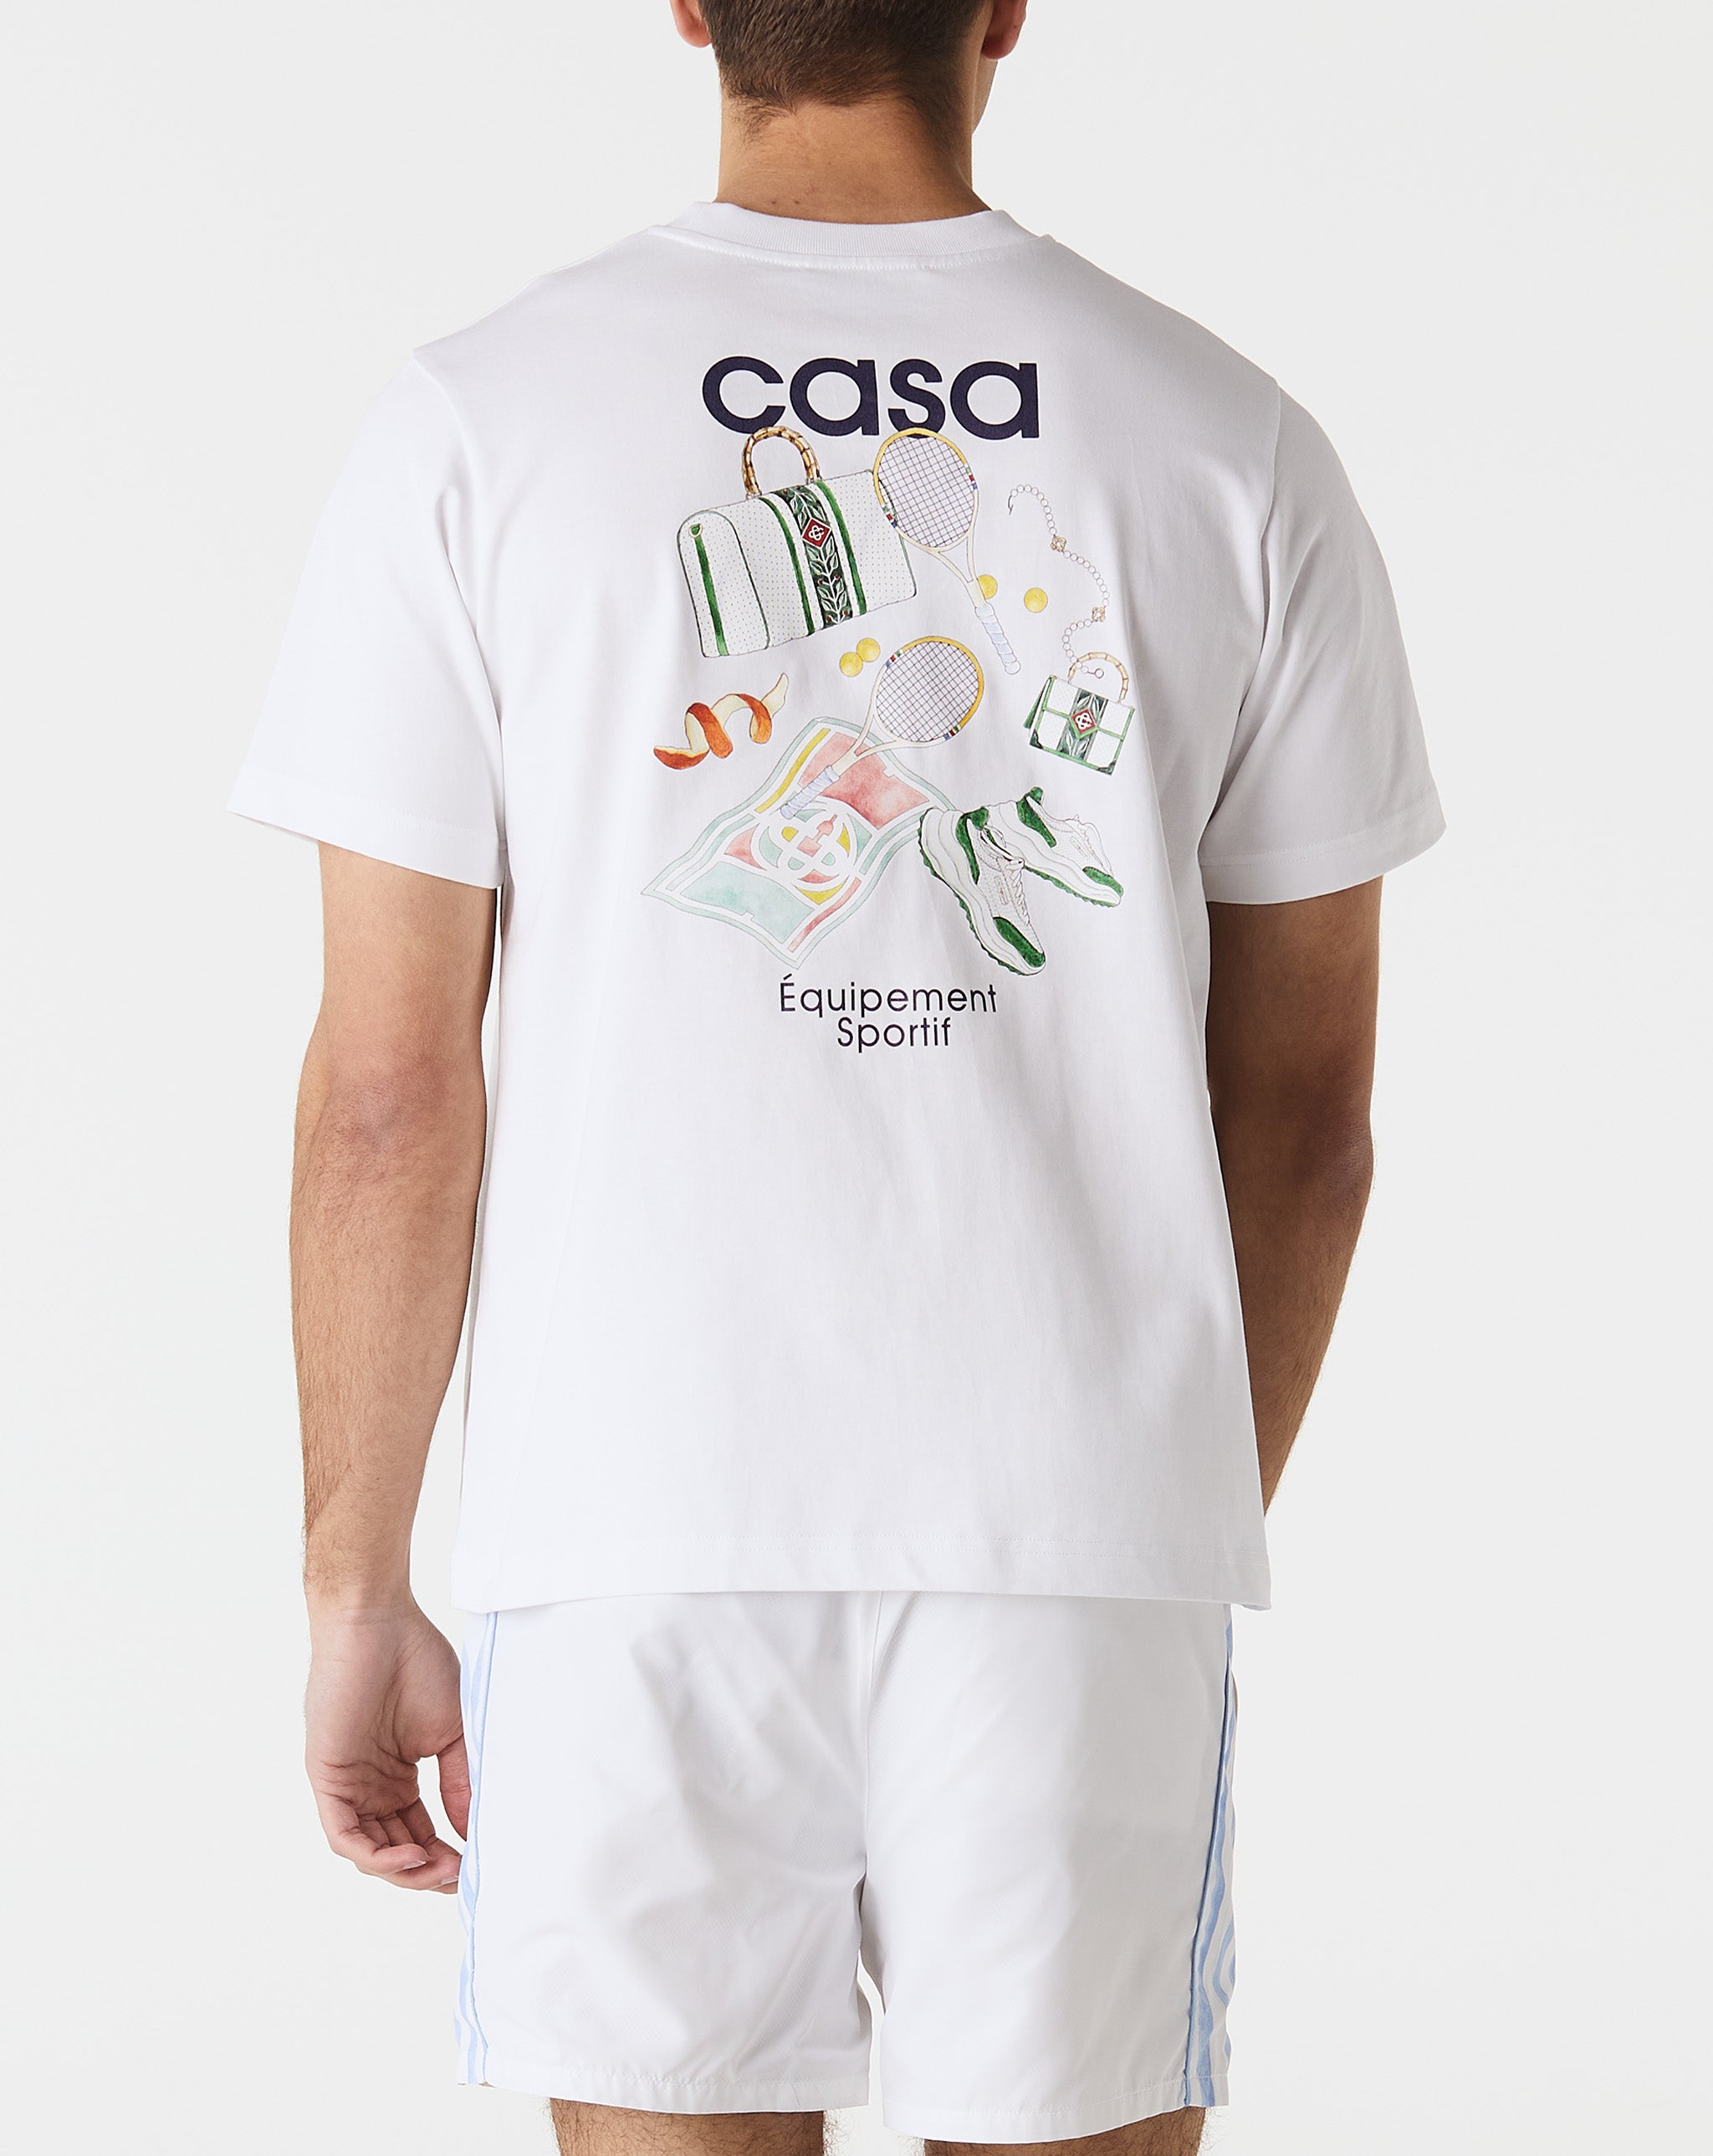 Casablanca Equipement Sportif Printed T-Shirt  - Cheap Urlfreeze Jordan outlet